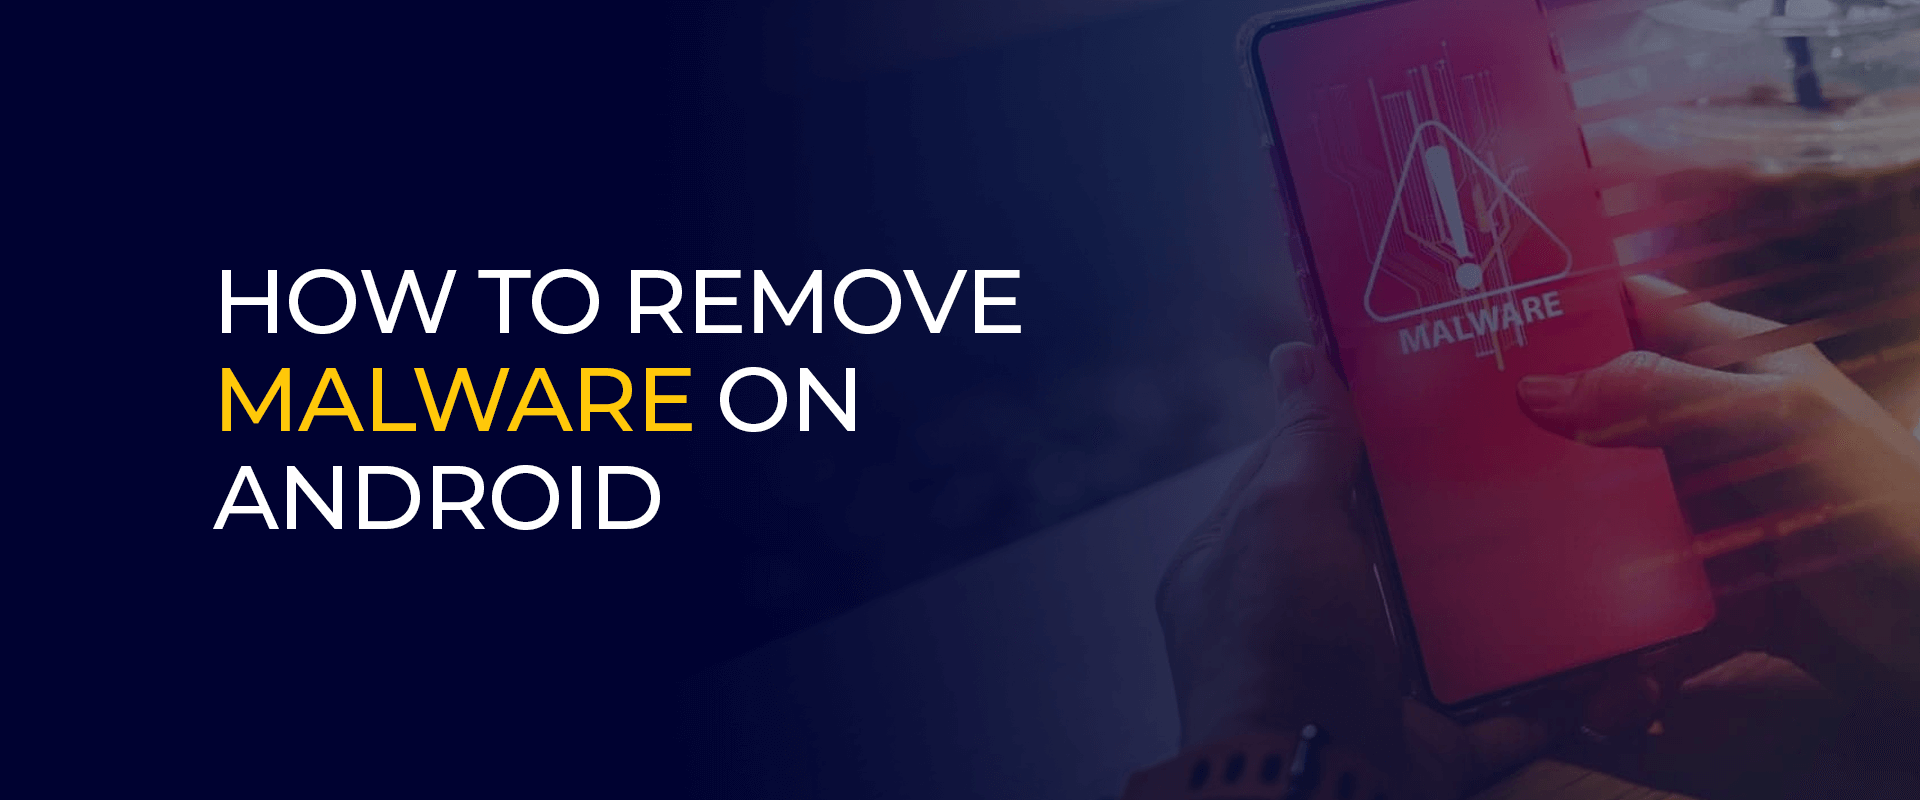 Cara menghilangkan malware di android